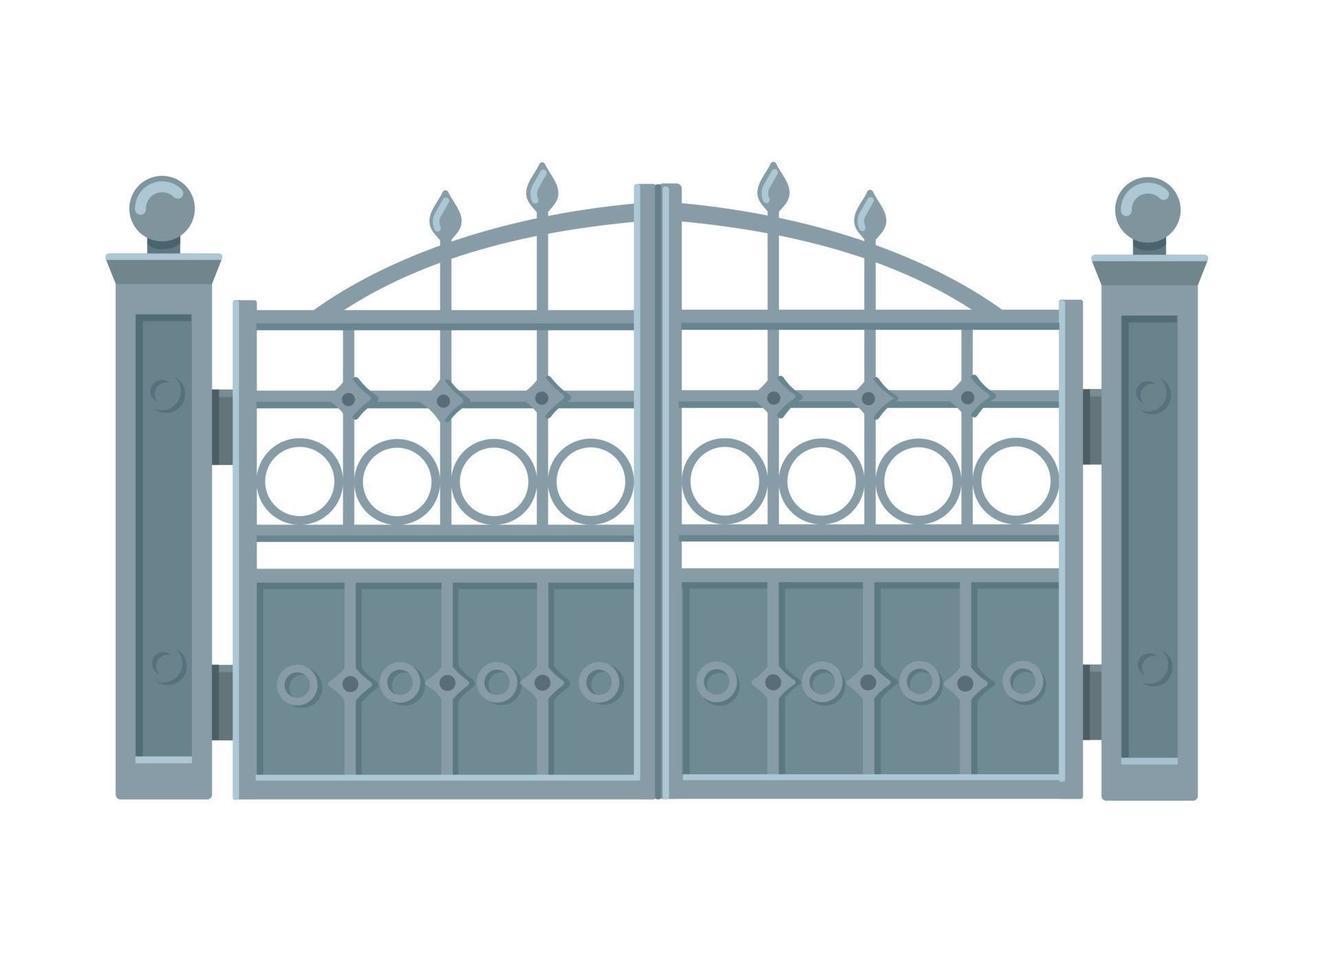 portes en métal gris dans un style plat branché isolé sur fond blanc. illustration vectorielle vecteur